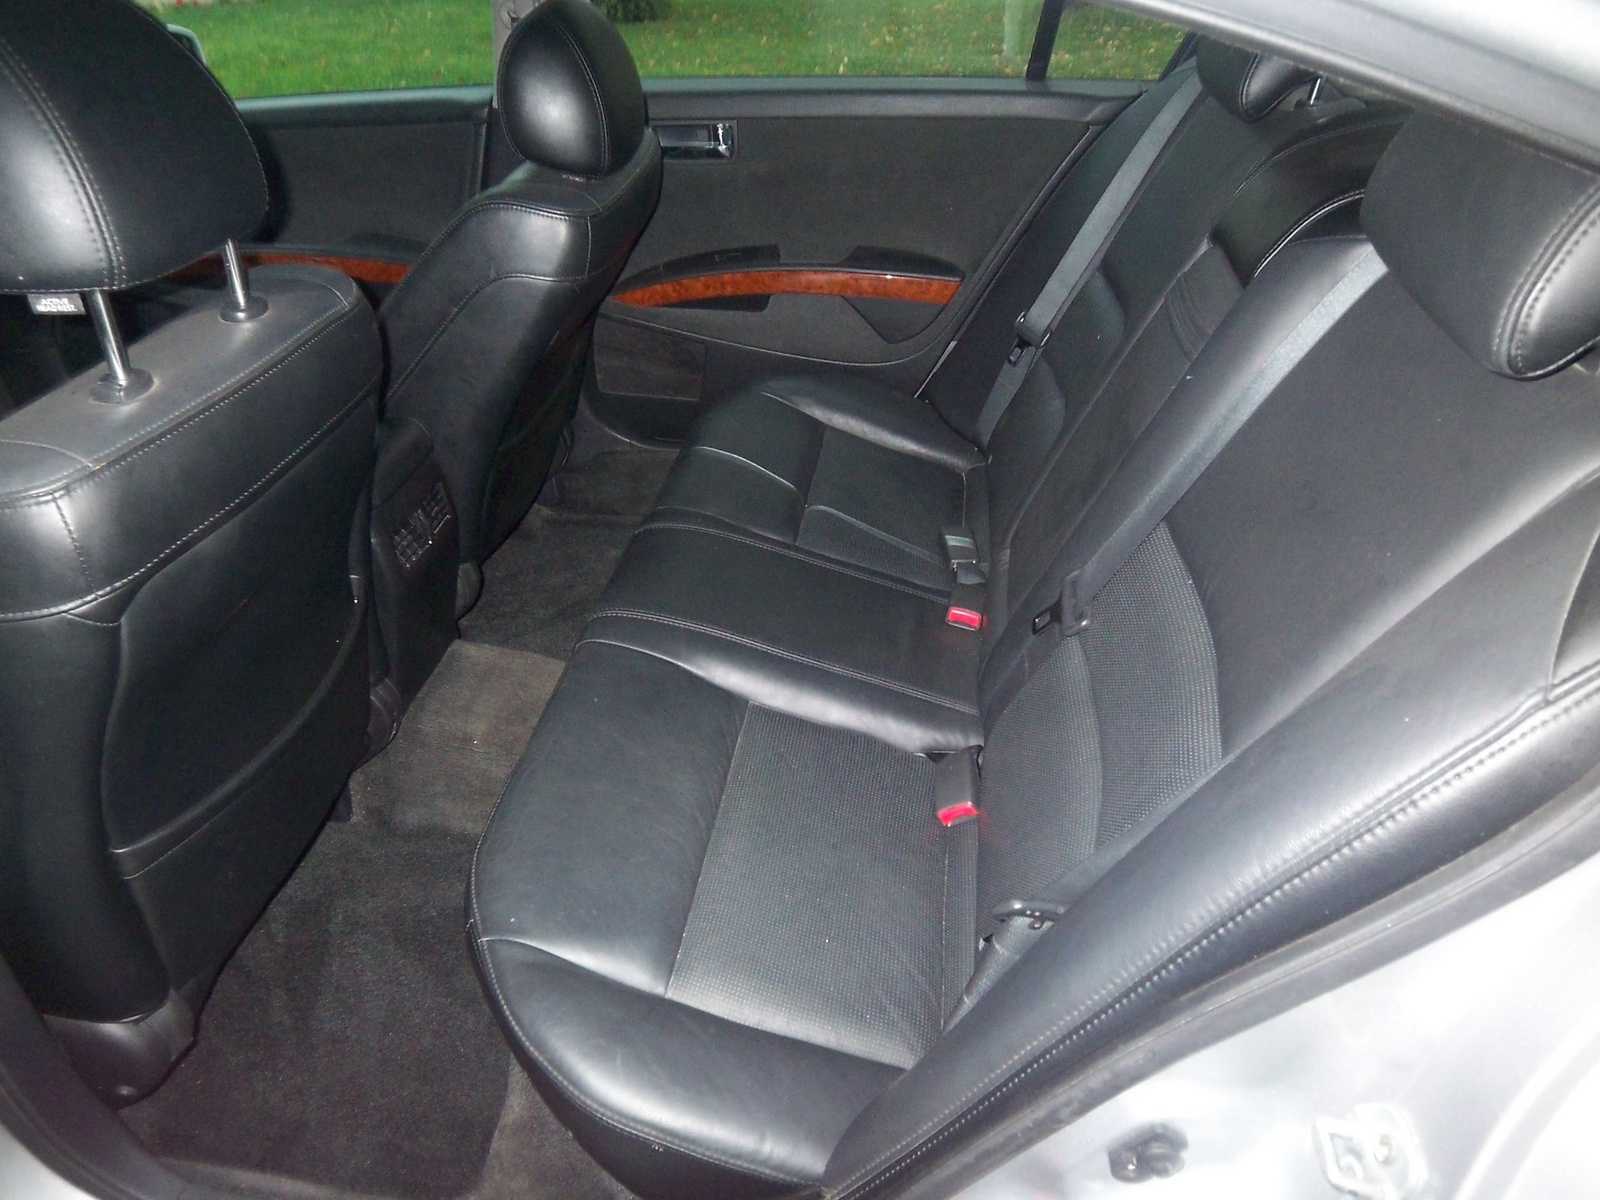 2005 Nissan maxima interior pictures